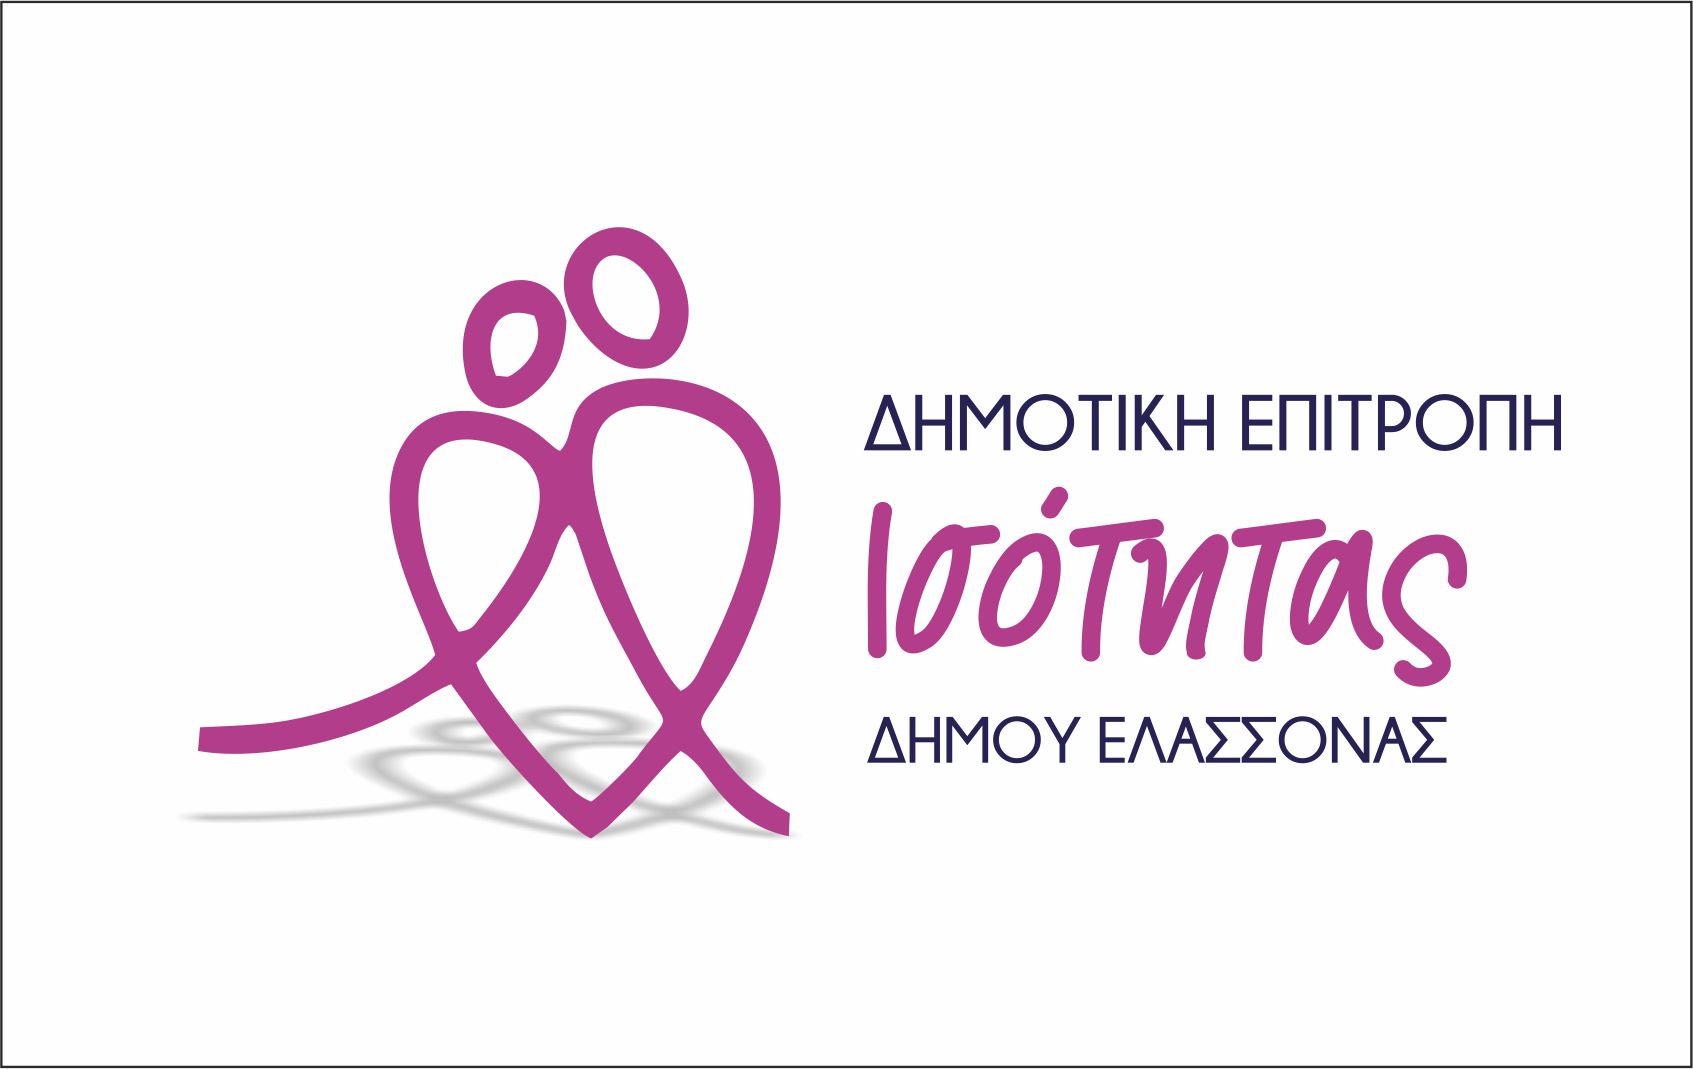 Σύσταση Επιτροπής Ισότητας από τον Δήμο Ελασσόνας